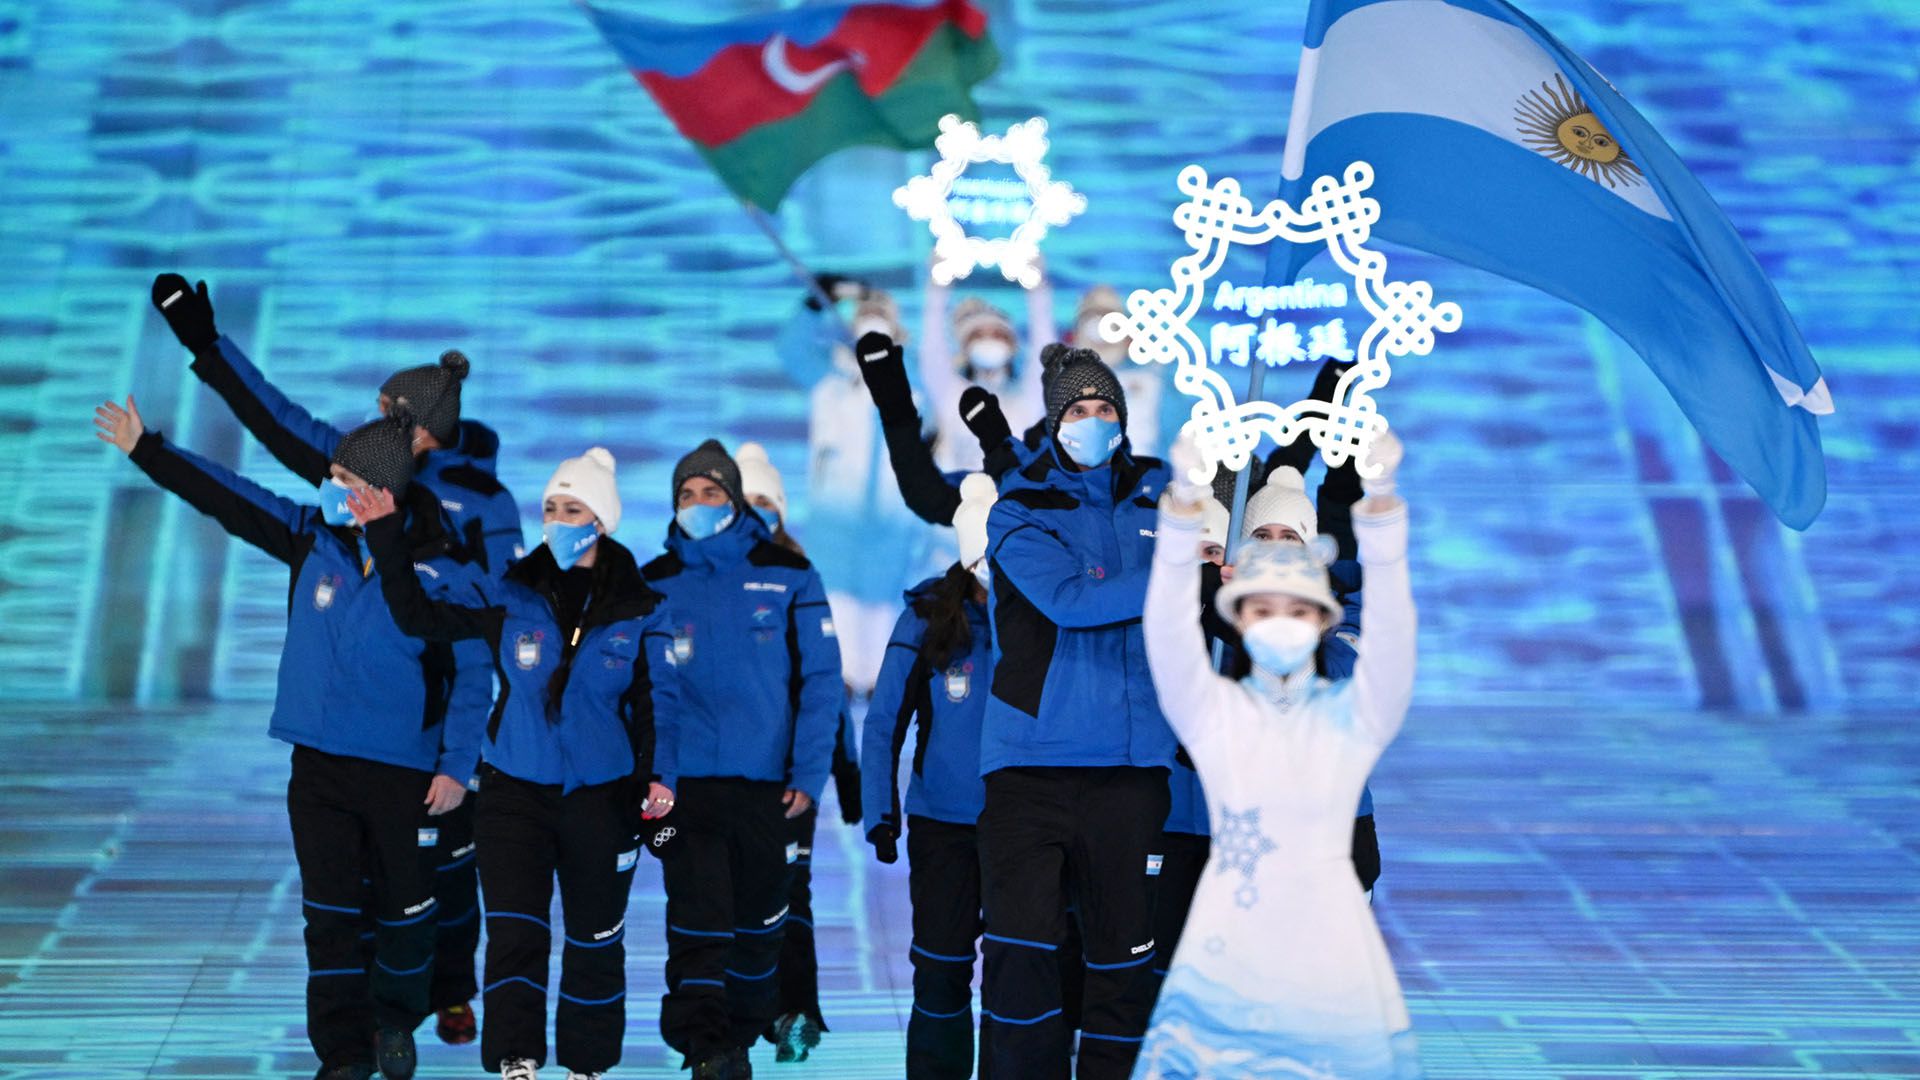 delegacion argentina juegos olimpicos de invierno beijing 2022